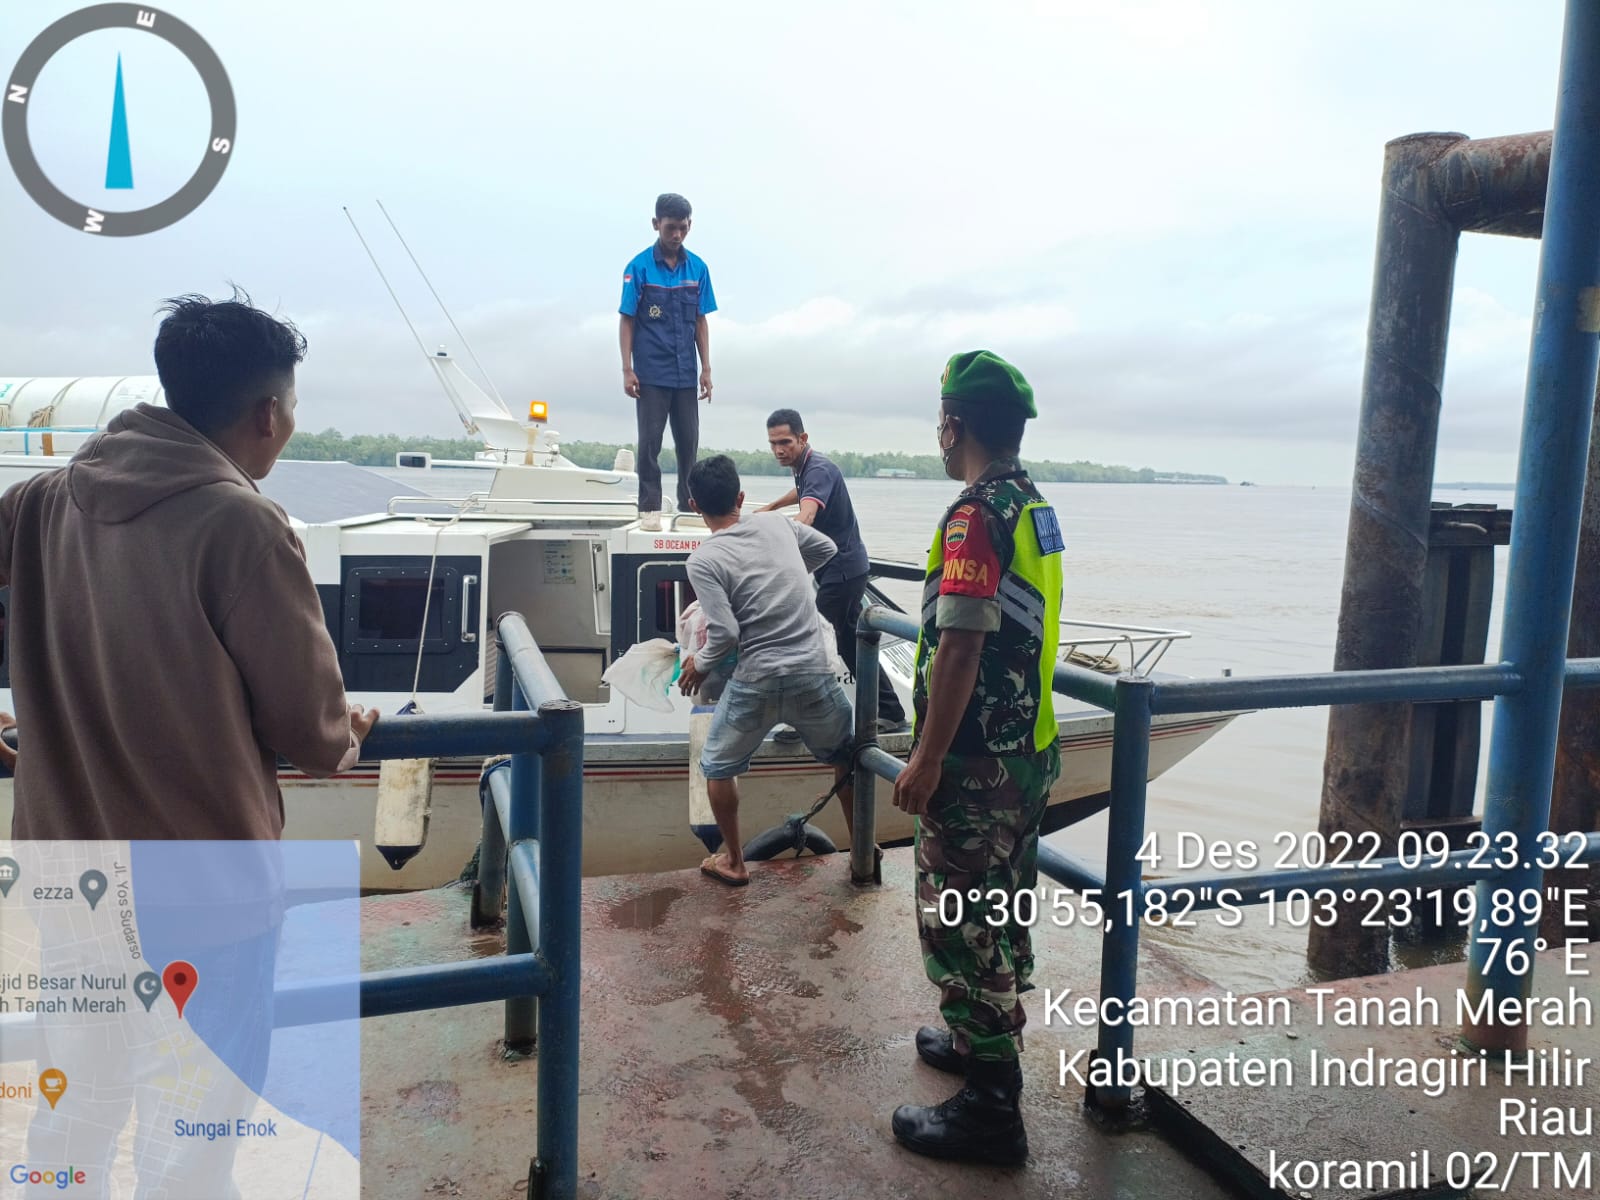 Anggota Koramil 02/TM Koptu RH Tambunan Beri Himbauan Protkes Kepada Masyarakat di Pelabuhan 